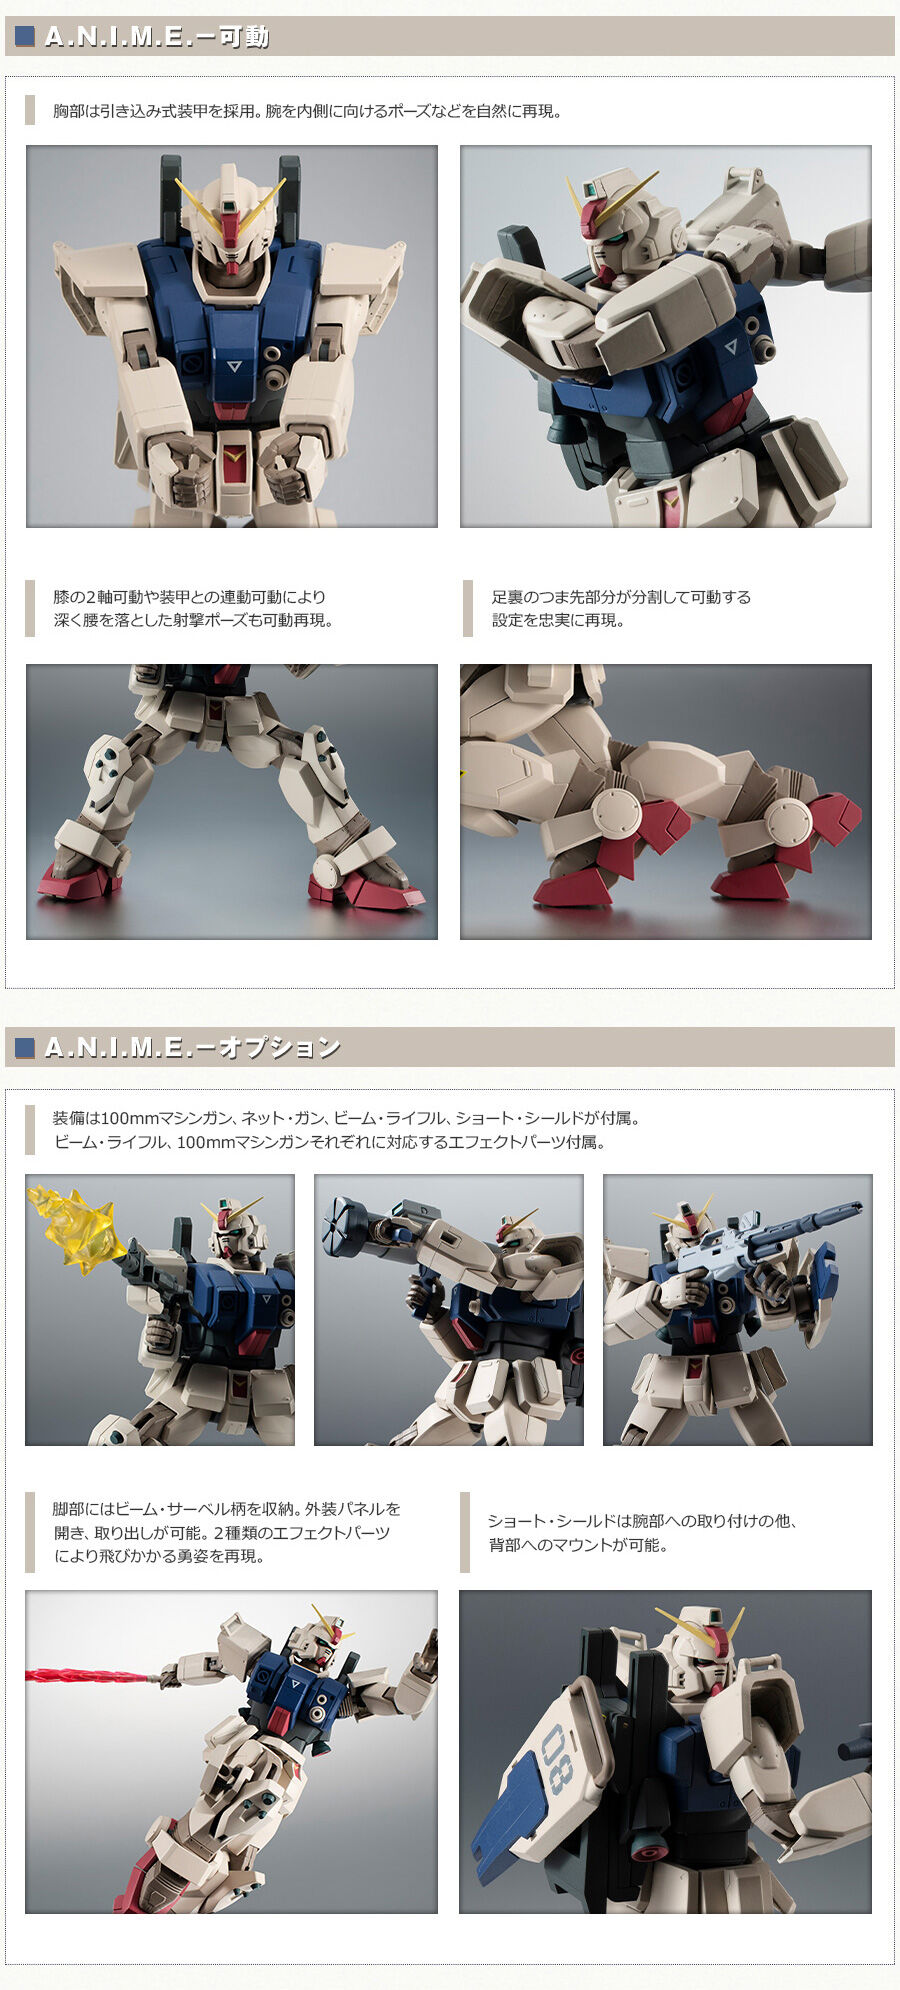 Robot Damashii RX-79［G］Gundam Ground Type (Type Desert) ver. ANIME, Premium Bandai